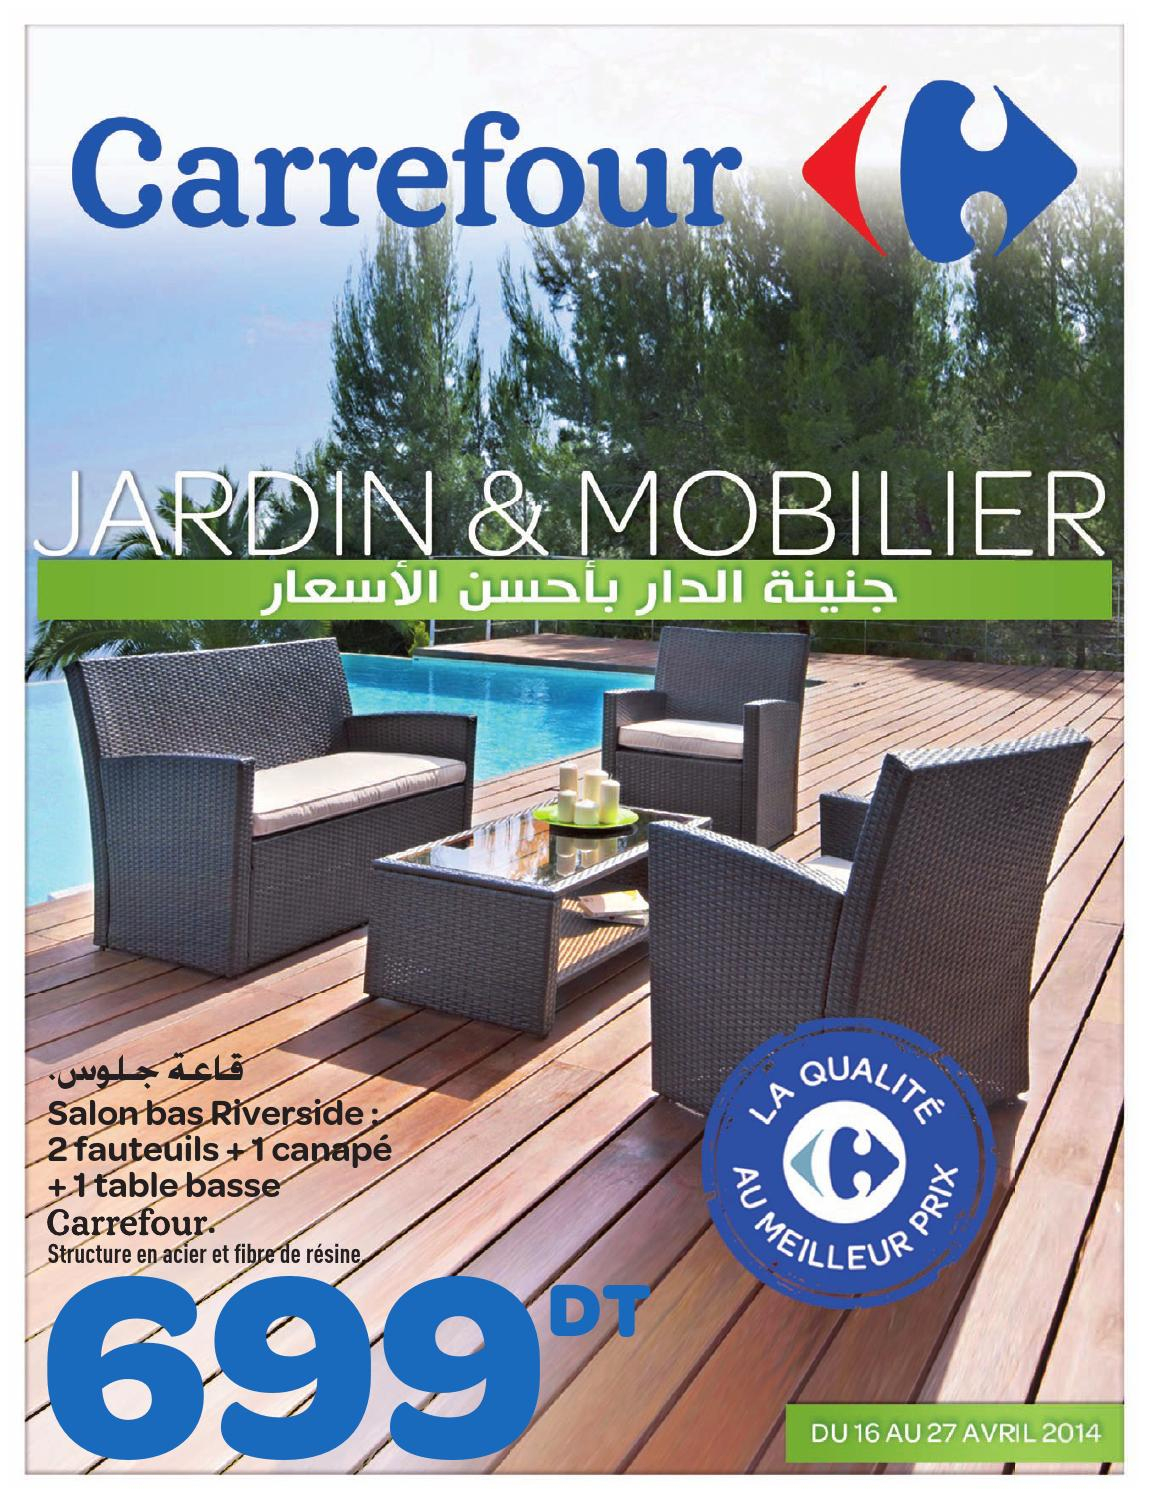 Catalogue Carrefour &quot;jardin Et Mobilier&quot; By Carrefour ... à Tonnelle De Jardin Chez Carrefour